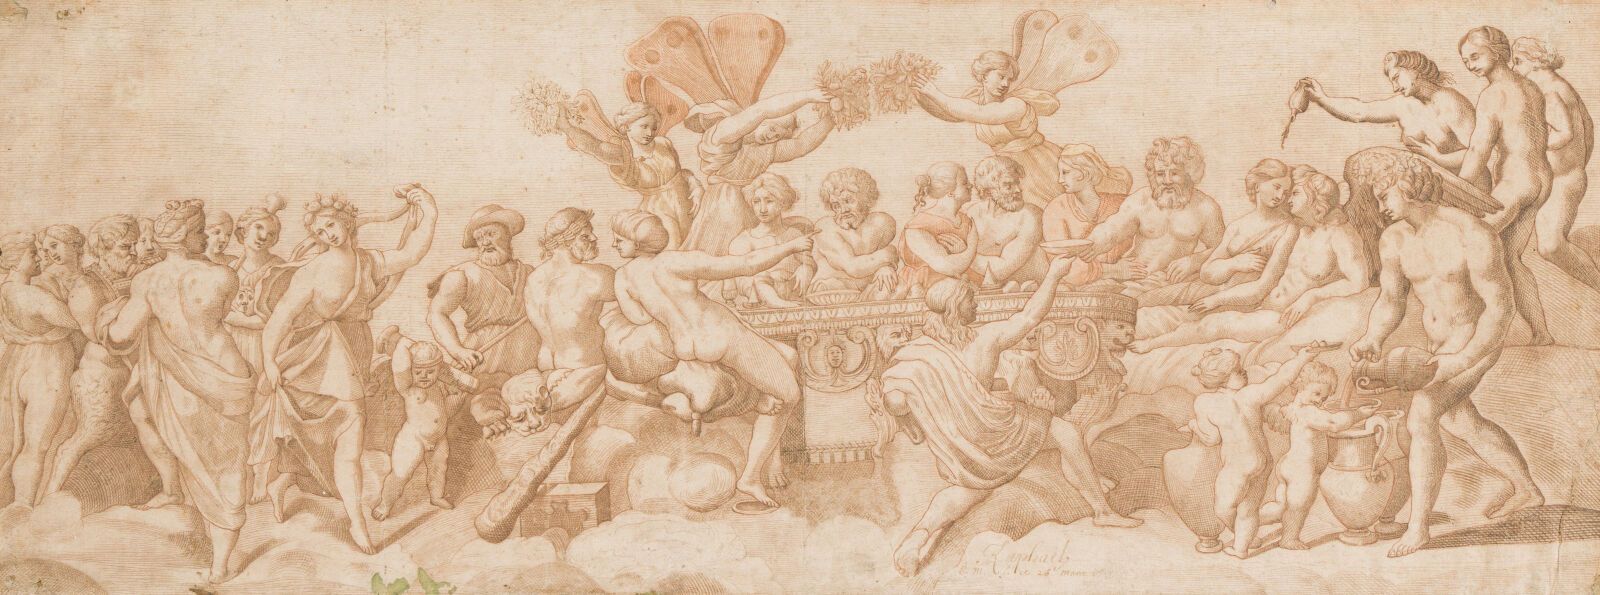 Null 7. Scuola italiana del XVII secolo

Festa degli Dei

Penna e lavaggio a inc&hellip;